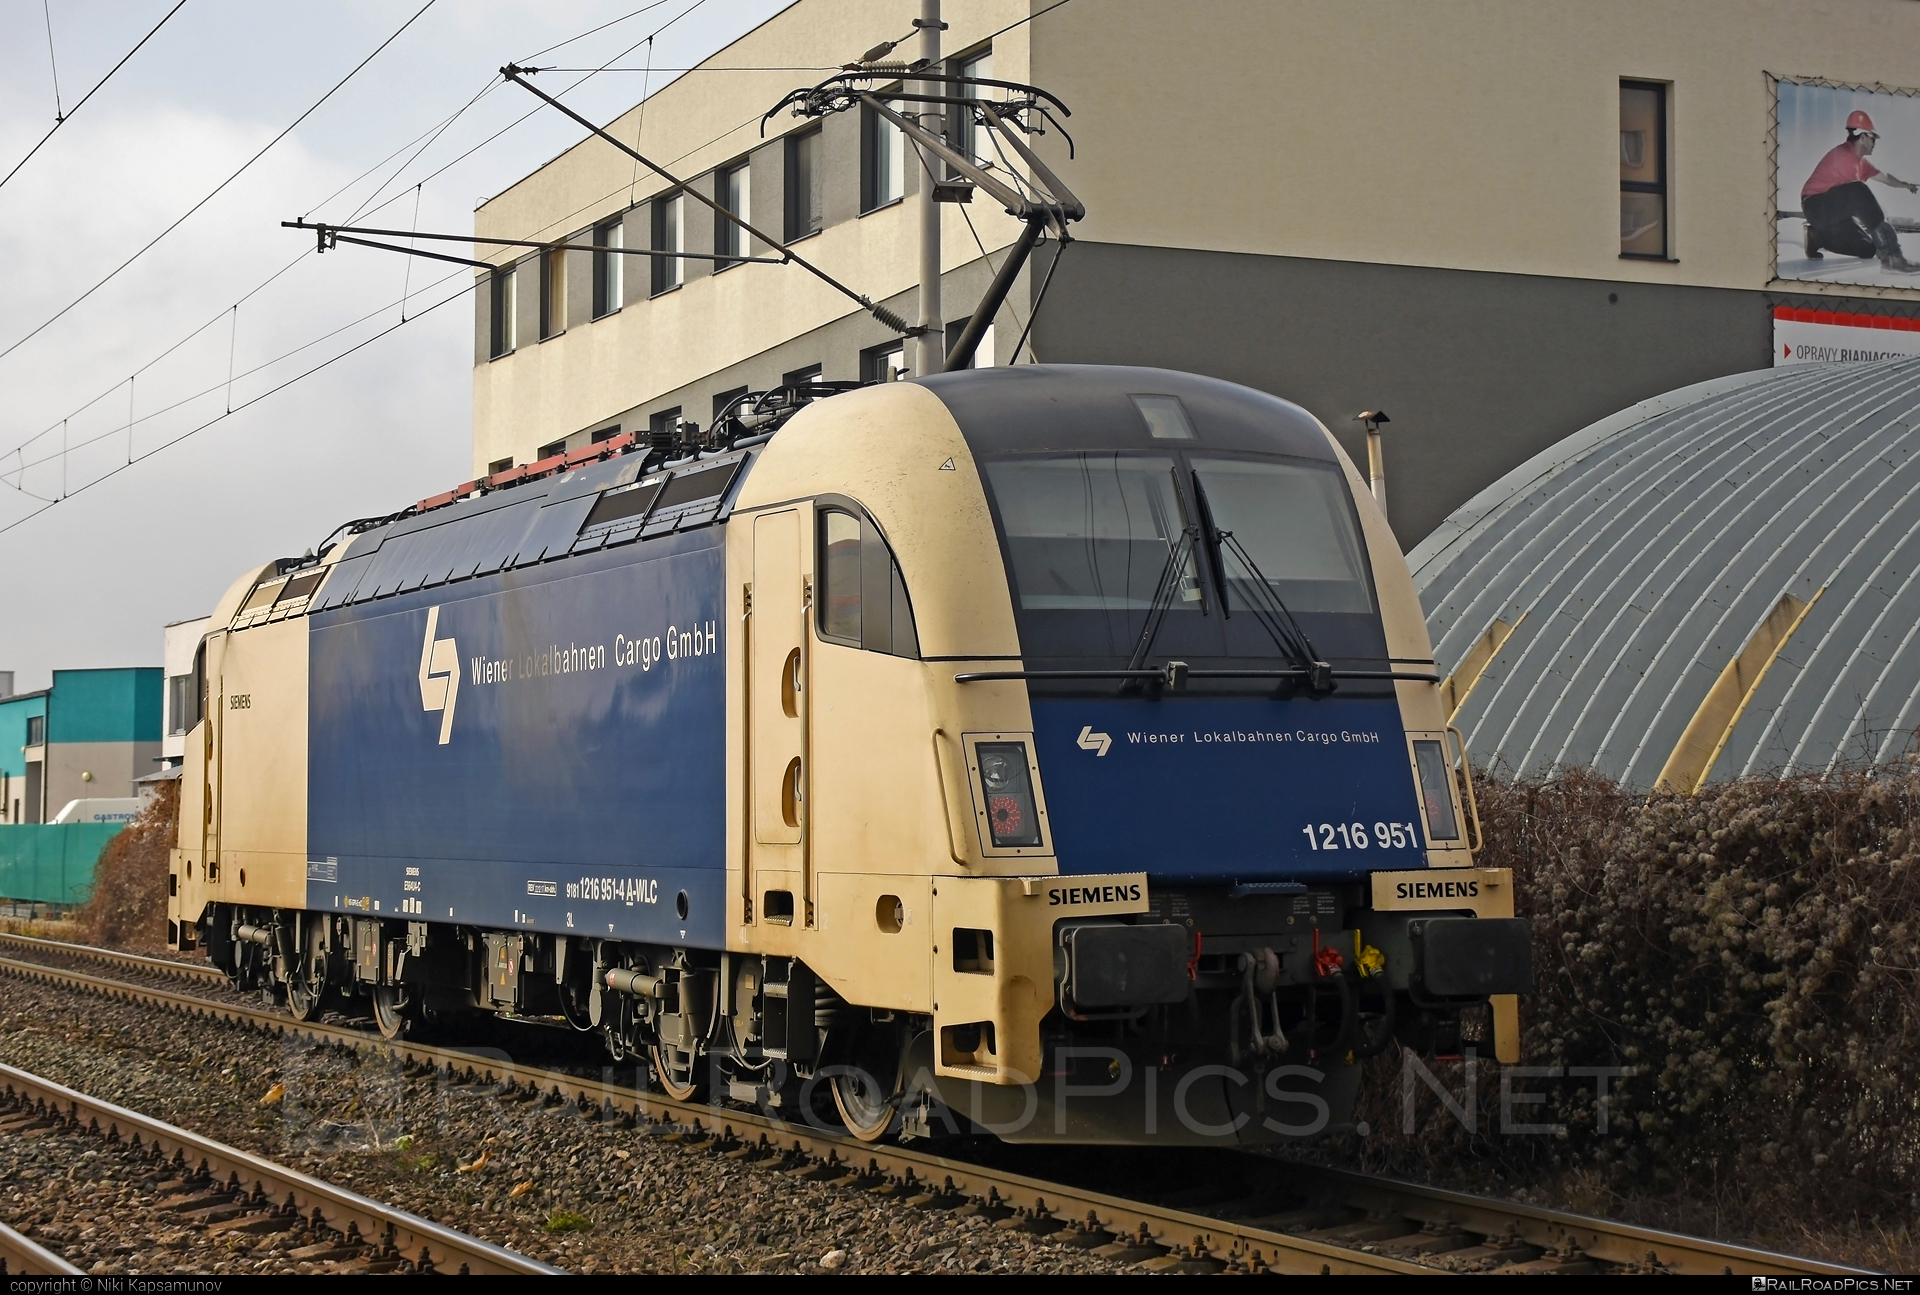 Siemens ES 64 U4 - 1216 951 operated by Wiener Lokalbahnen Cargo GmbH #es64 #es64u4 #eurosprinter #siemens #siemenses64 #siemenses64u4 #siemenstaurus #taurus #tauruslocomotive #wienerlokalbahnencargo #wienerlokalbahnencargogmbh #wlc